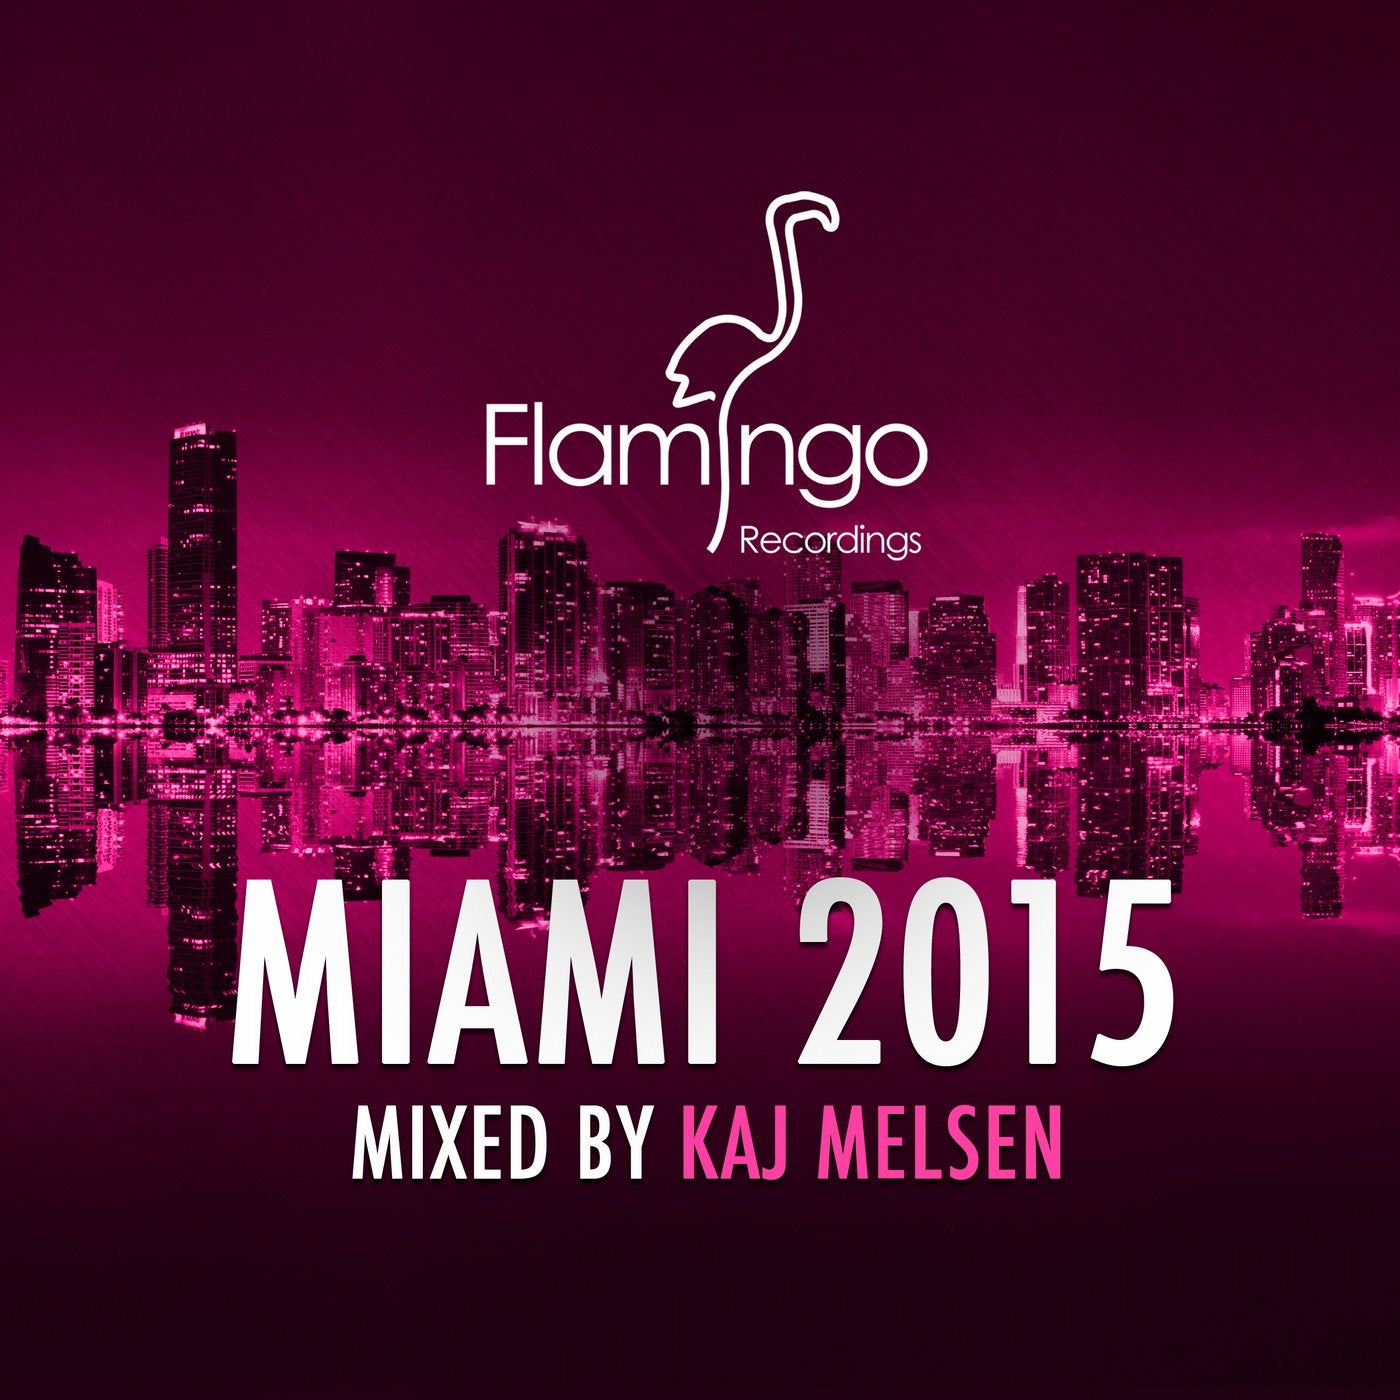 Flamingo Miami 2015